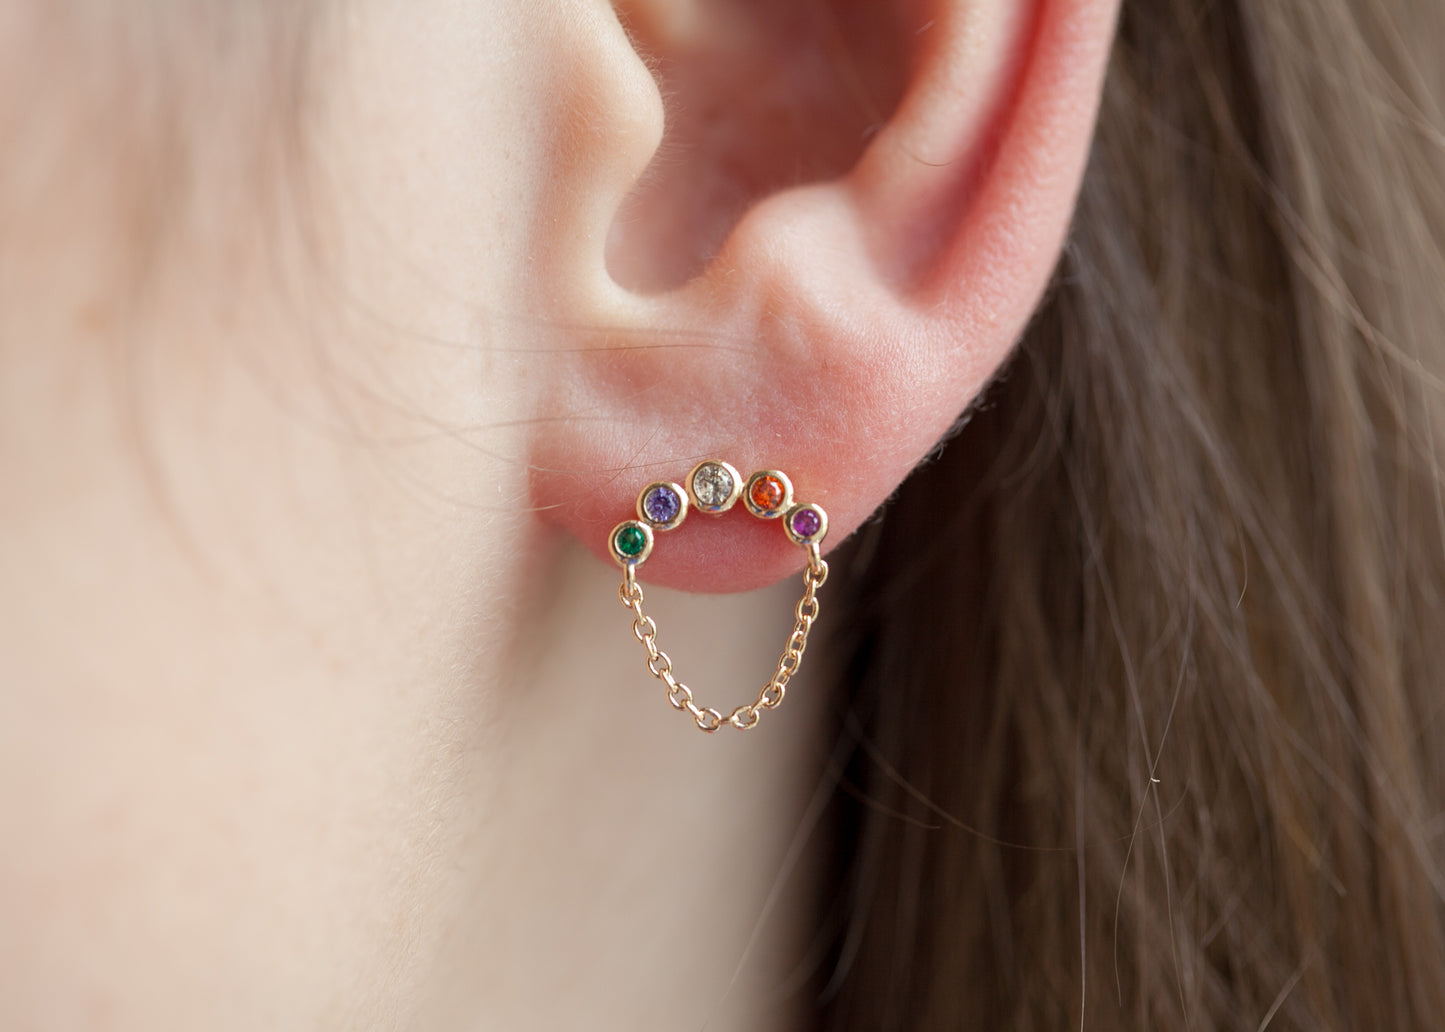 Ohrringe mit bunten Steinen und Kette vergoldet